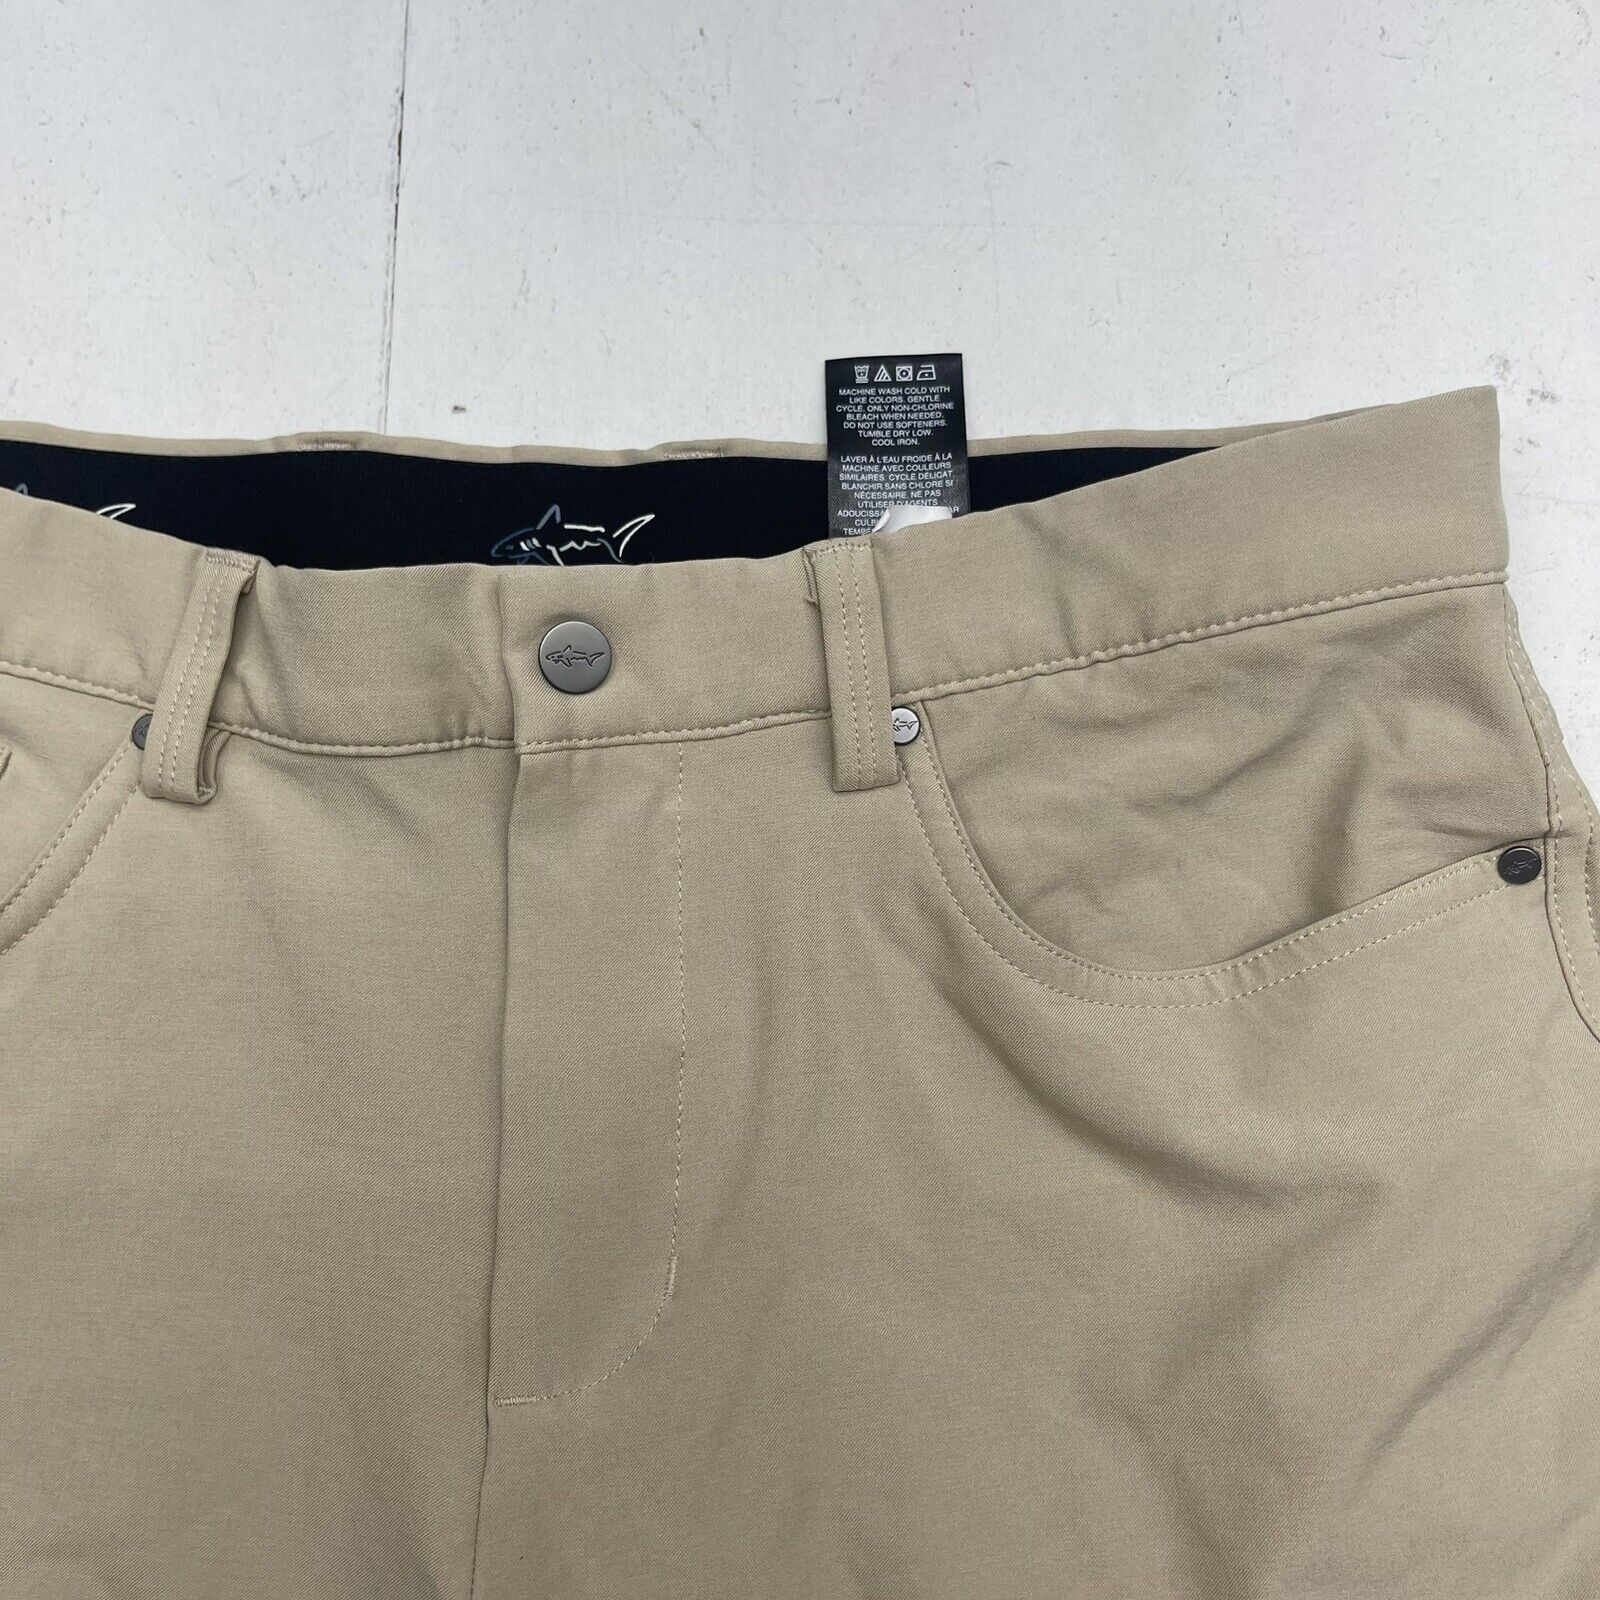 Greg Norman Tan Jordan Gold Pants Mens Size 32x30 - beyond exchange